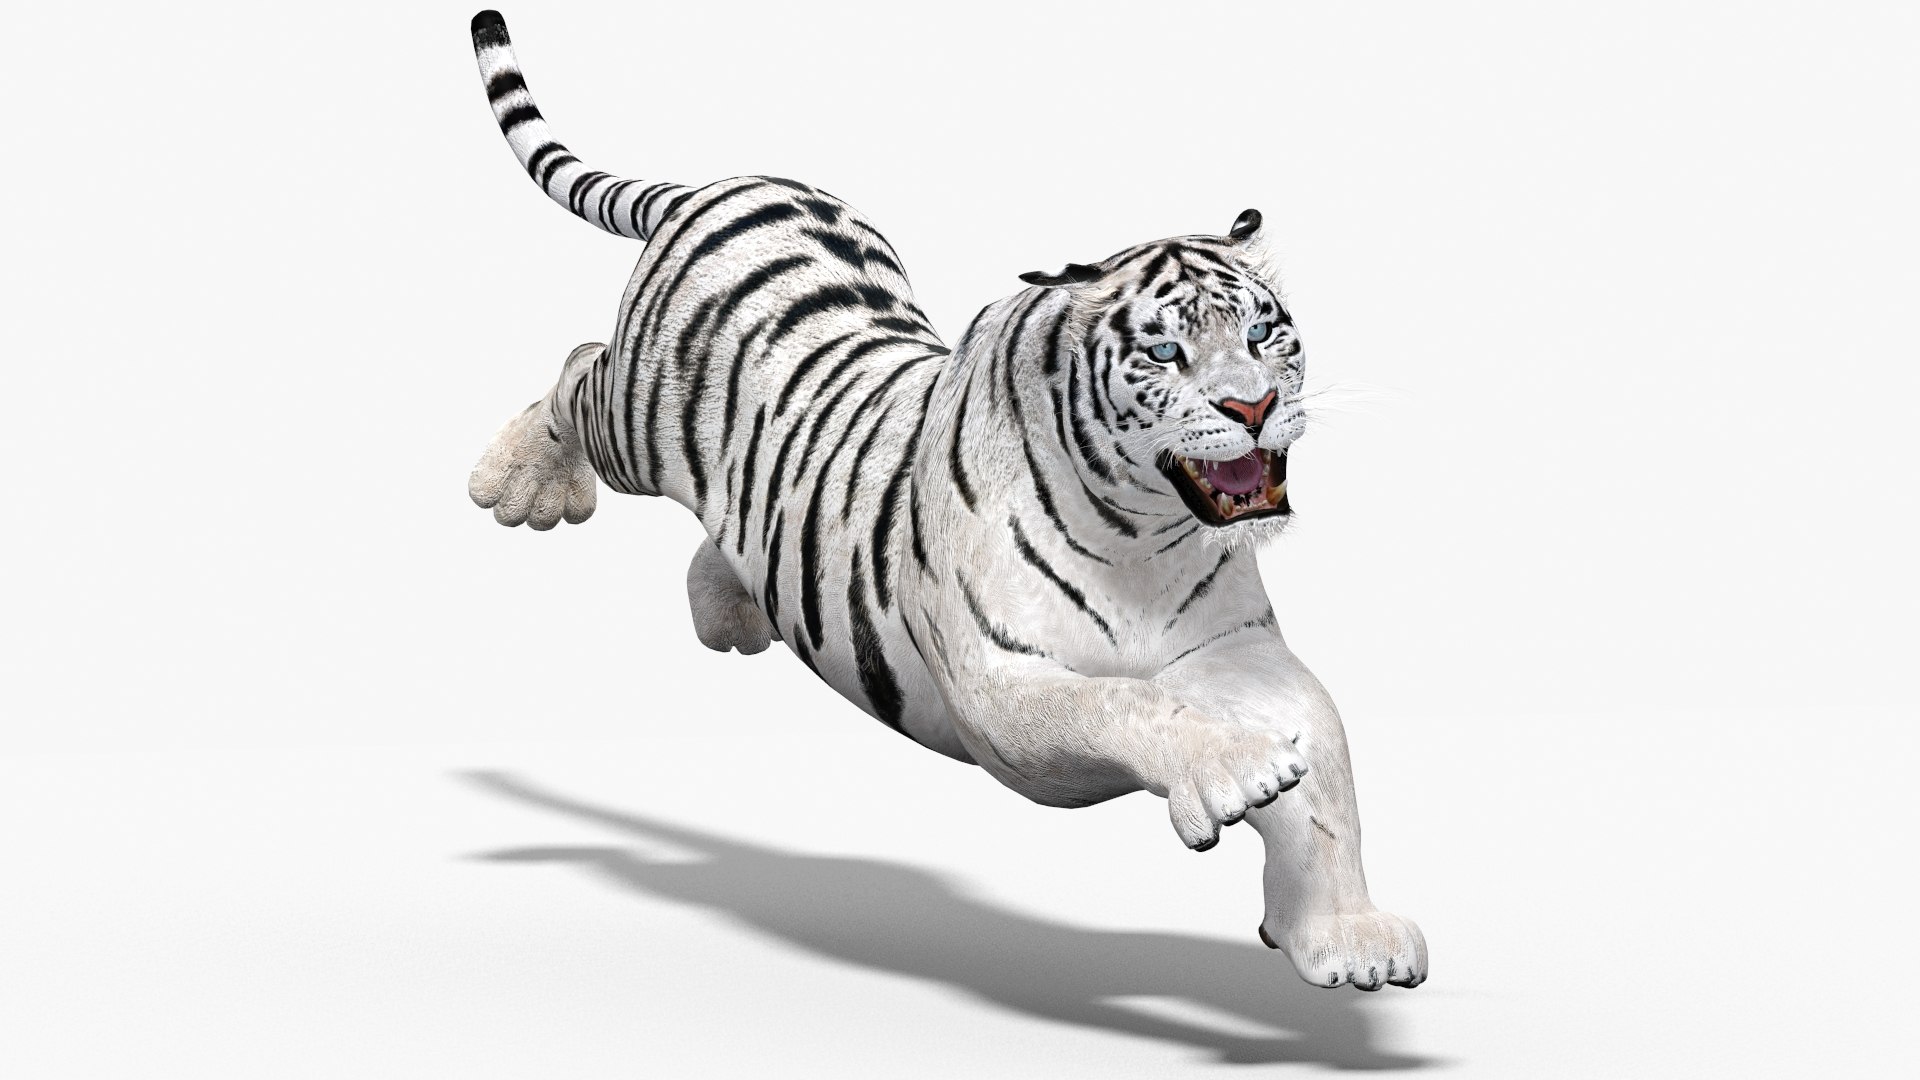 modèle 3D de Modèle Tigre Blanc - TurboSquid 1832184